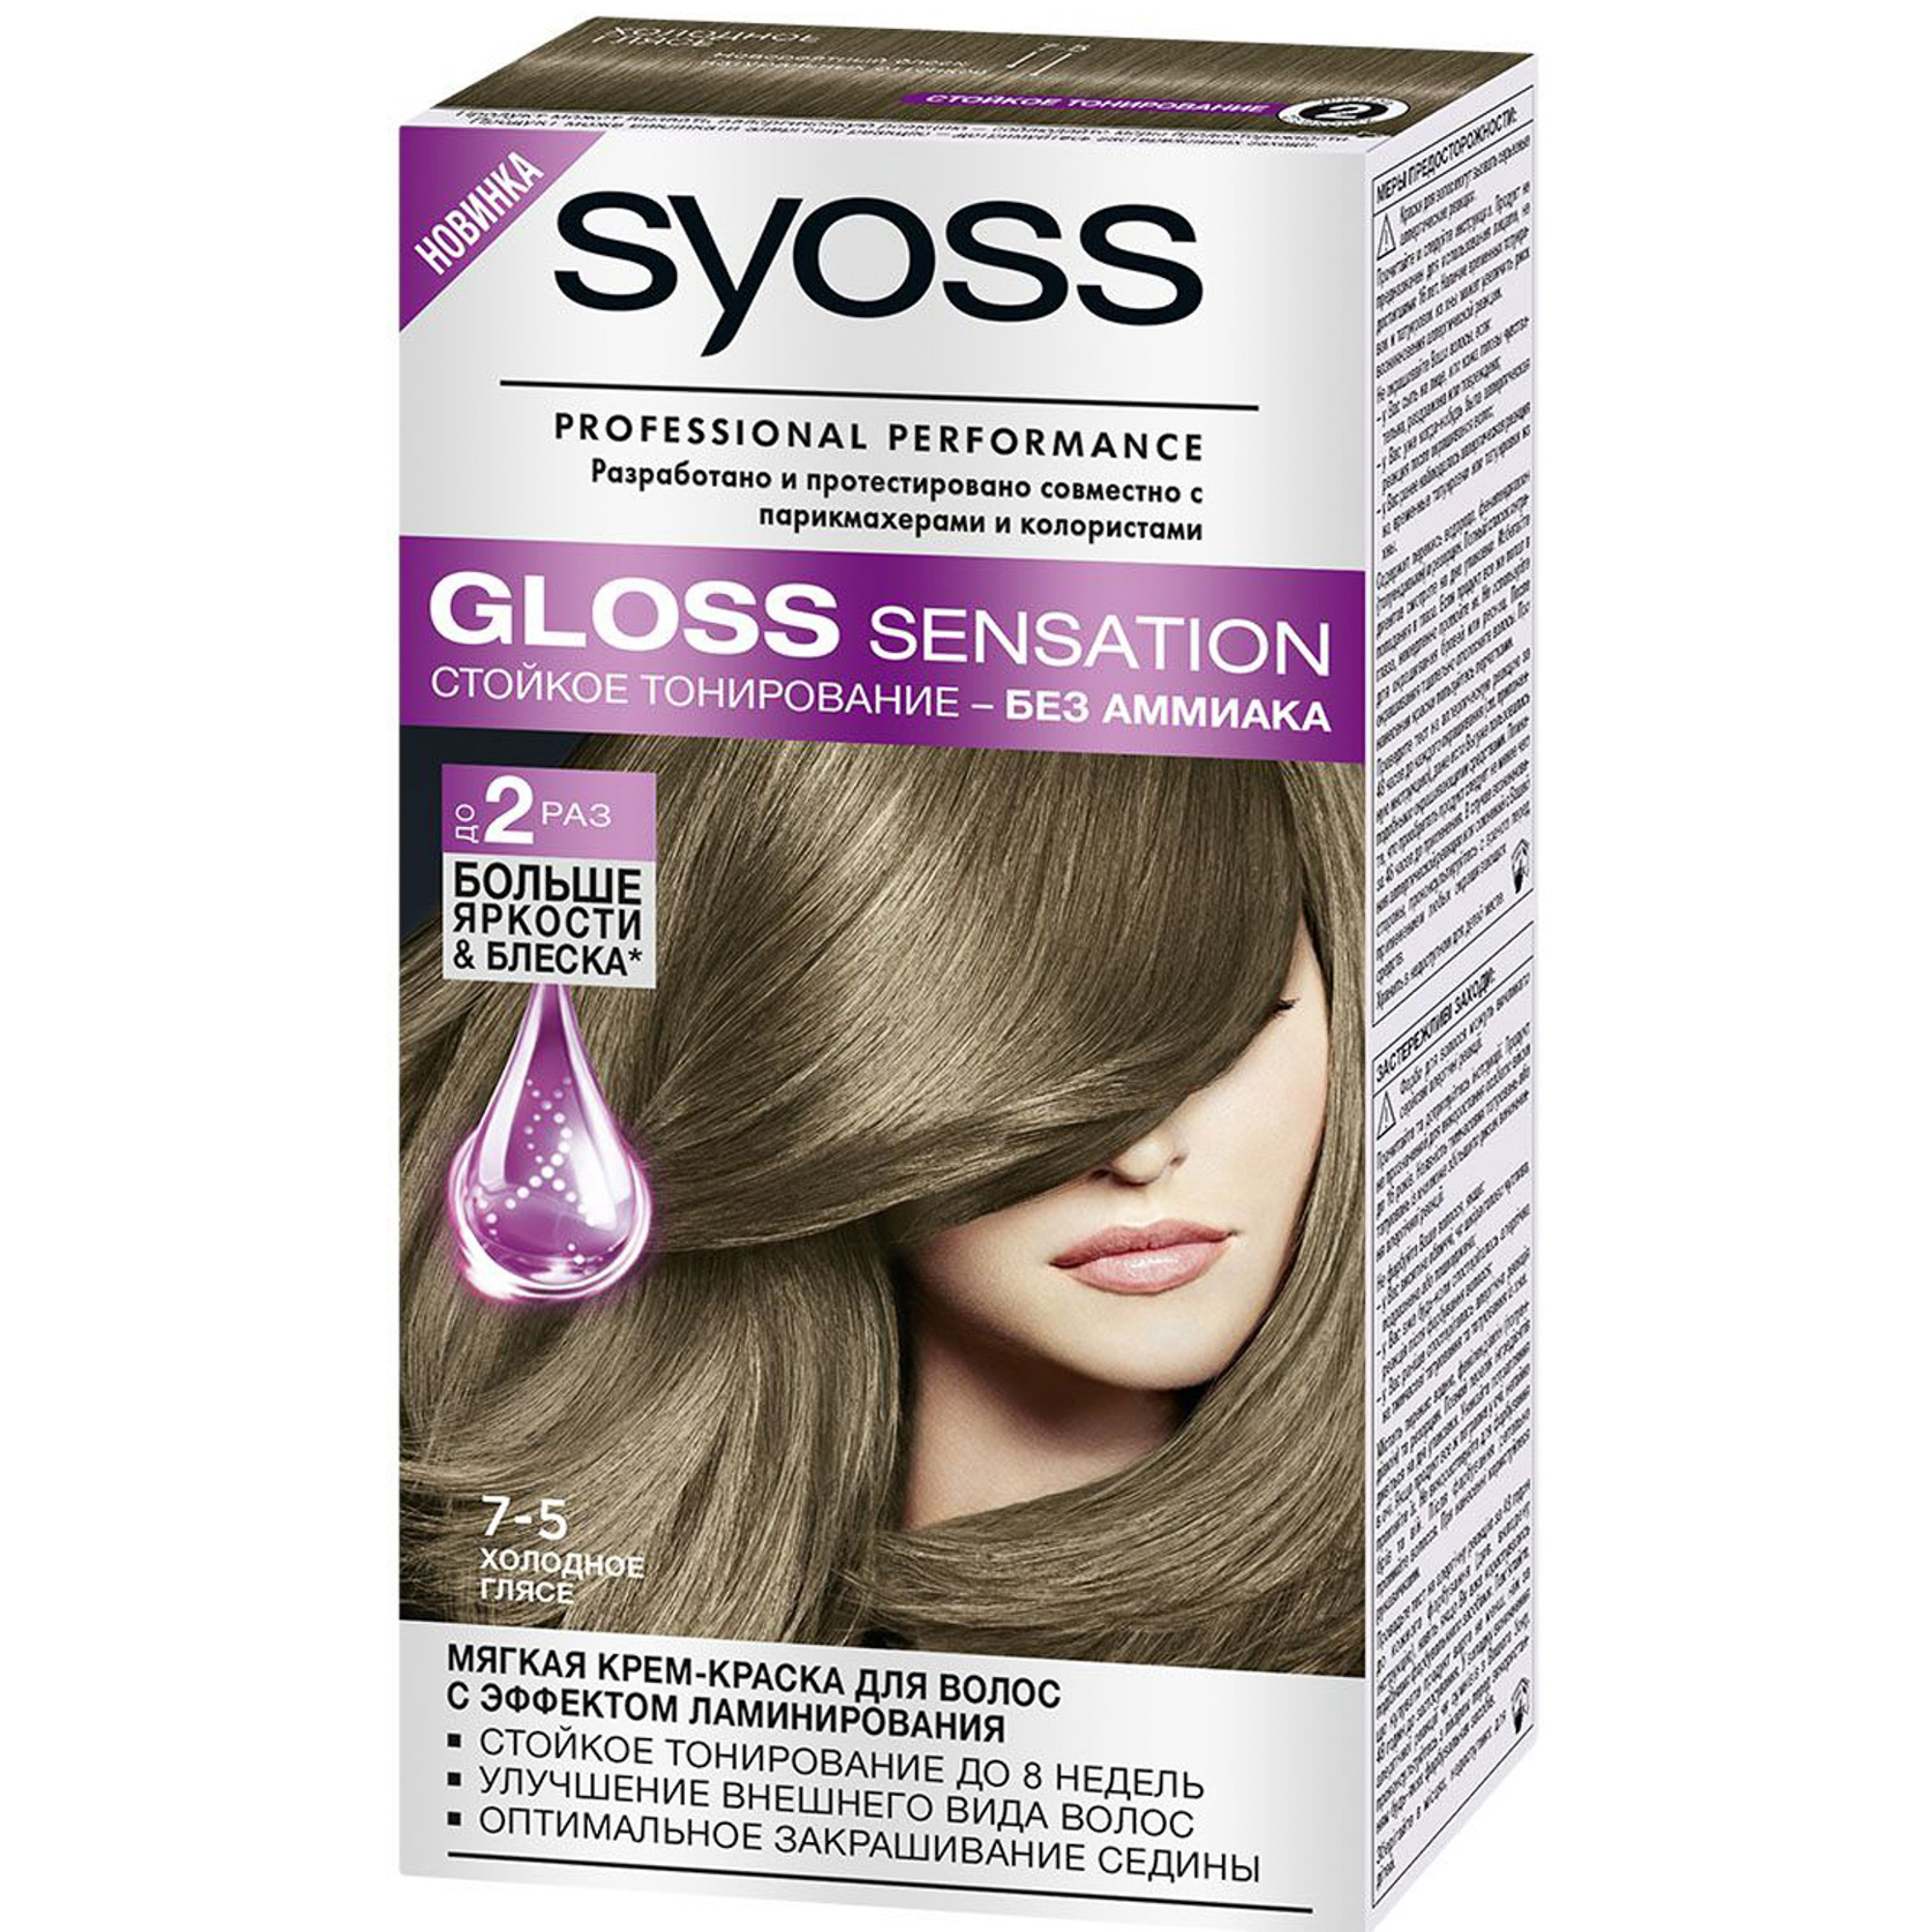 Номер пепельной краски. Syoss Gloss Sensation. Syoss Gloss Sensation 7-5 Холодное глясе. Syoss Gloss Sensation мягкая крем-краска для палитра. Syoss Gloss Sensation 5.86 палитра.